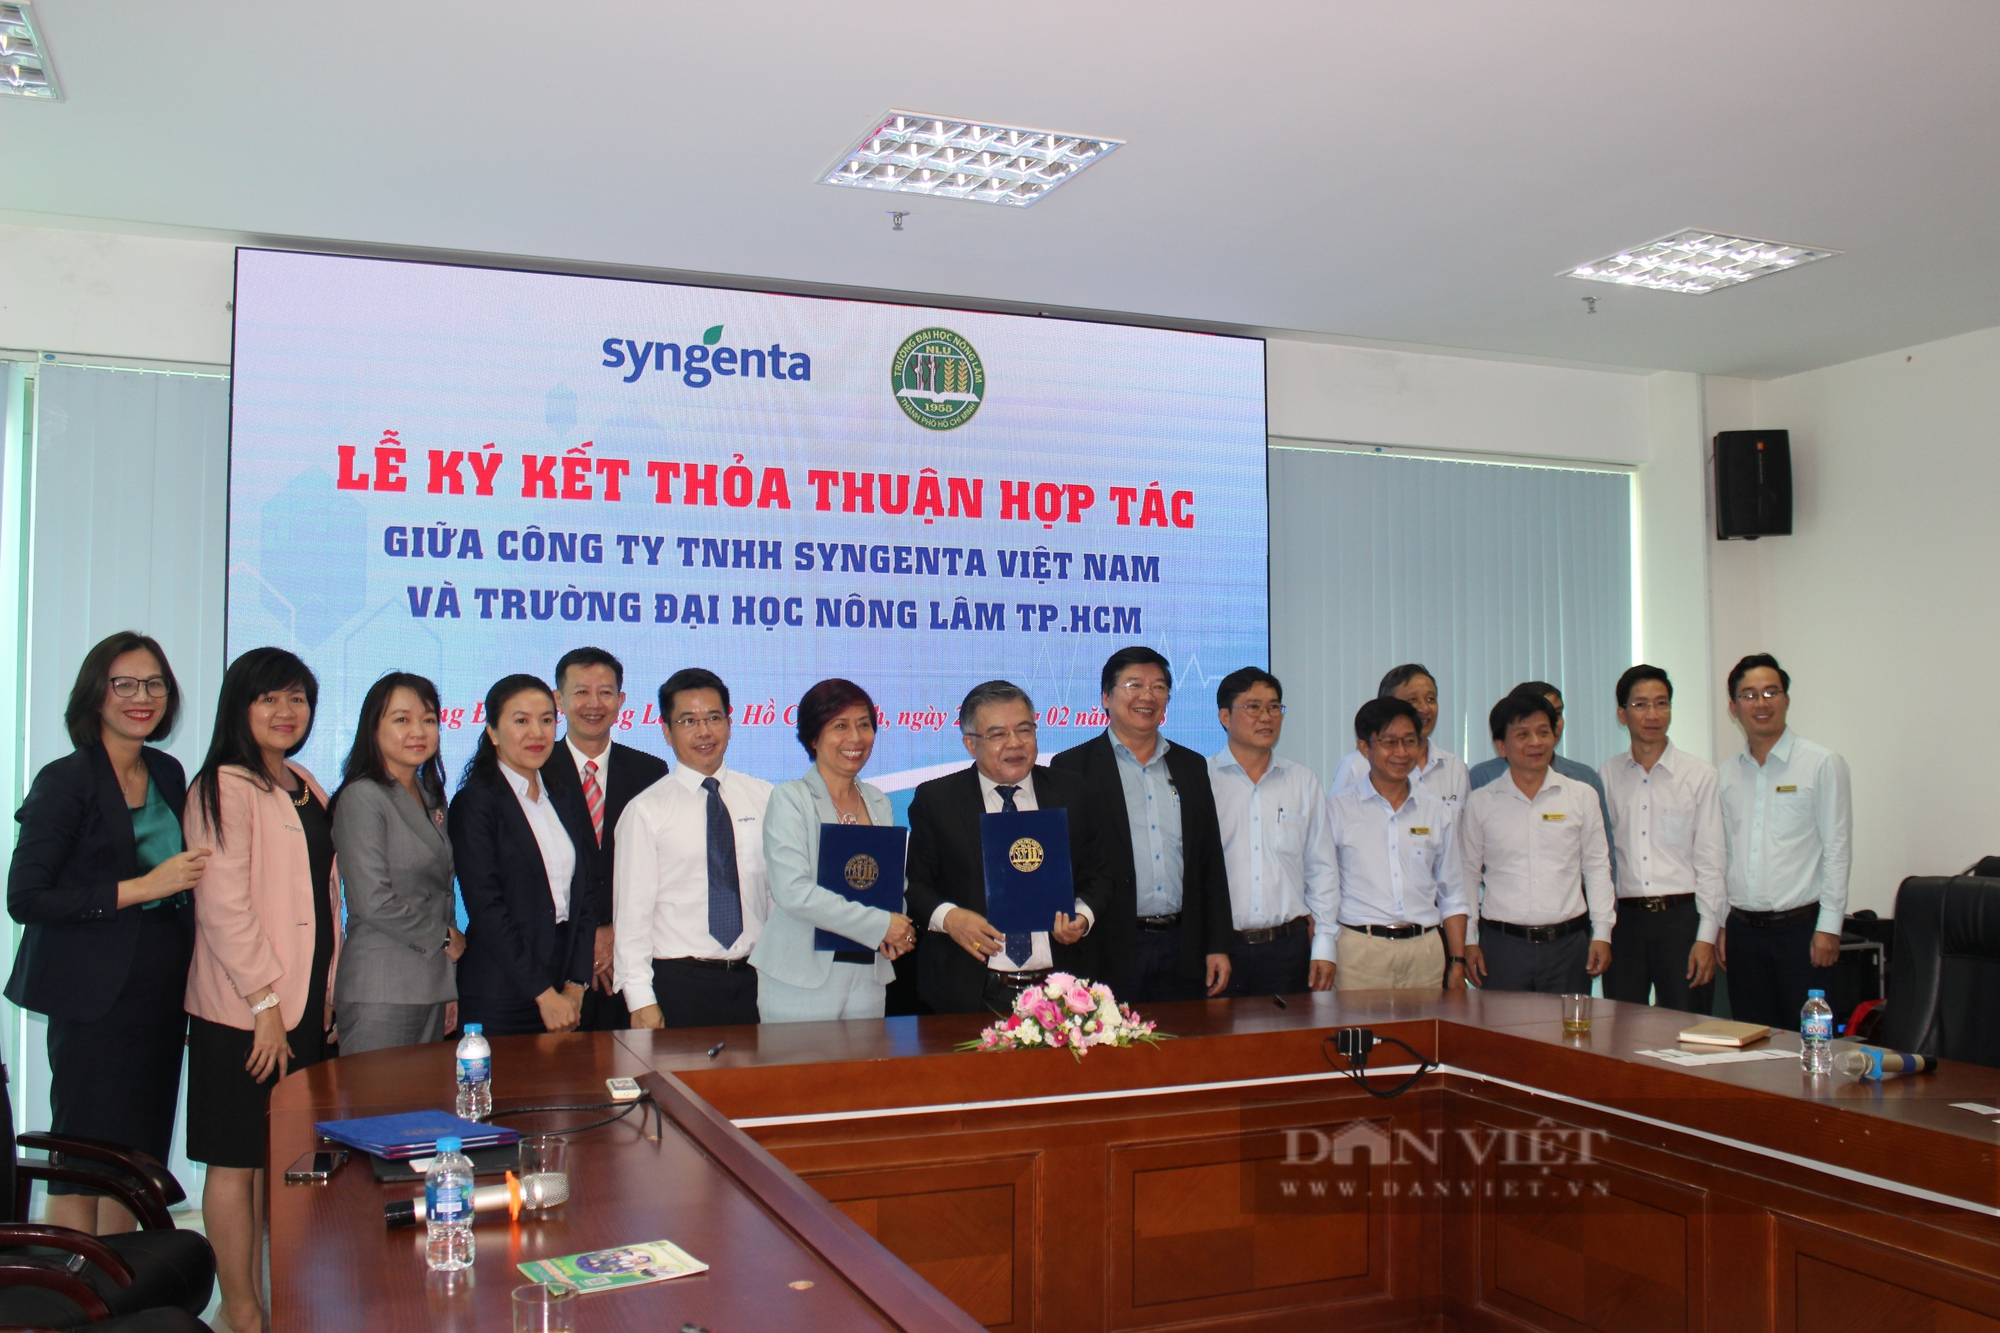 Syngenta Việt Nam ký kết hợp tác cùng Trường ĐH Nông Lâm TP.HCM nhằm thúc đẩy phát triển nhân lực nông nghiệp chất lượng cao - Ảnh 4.